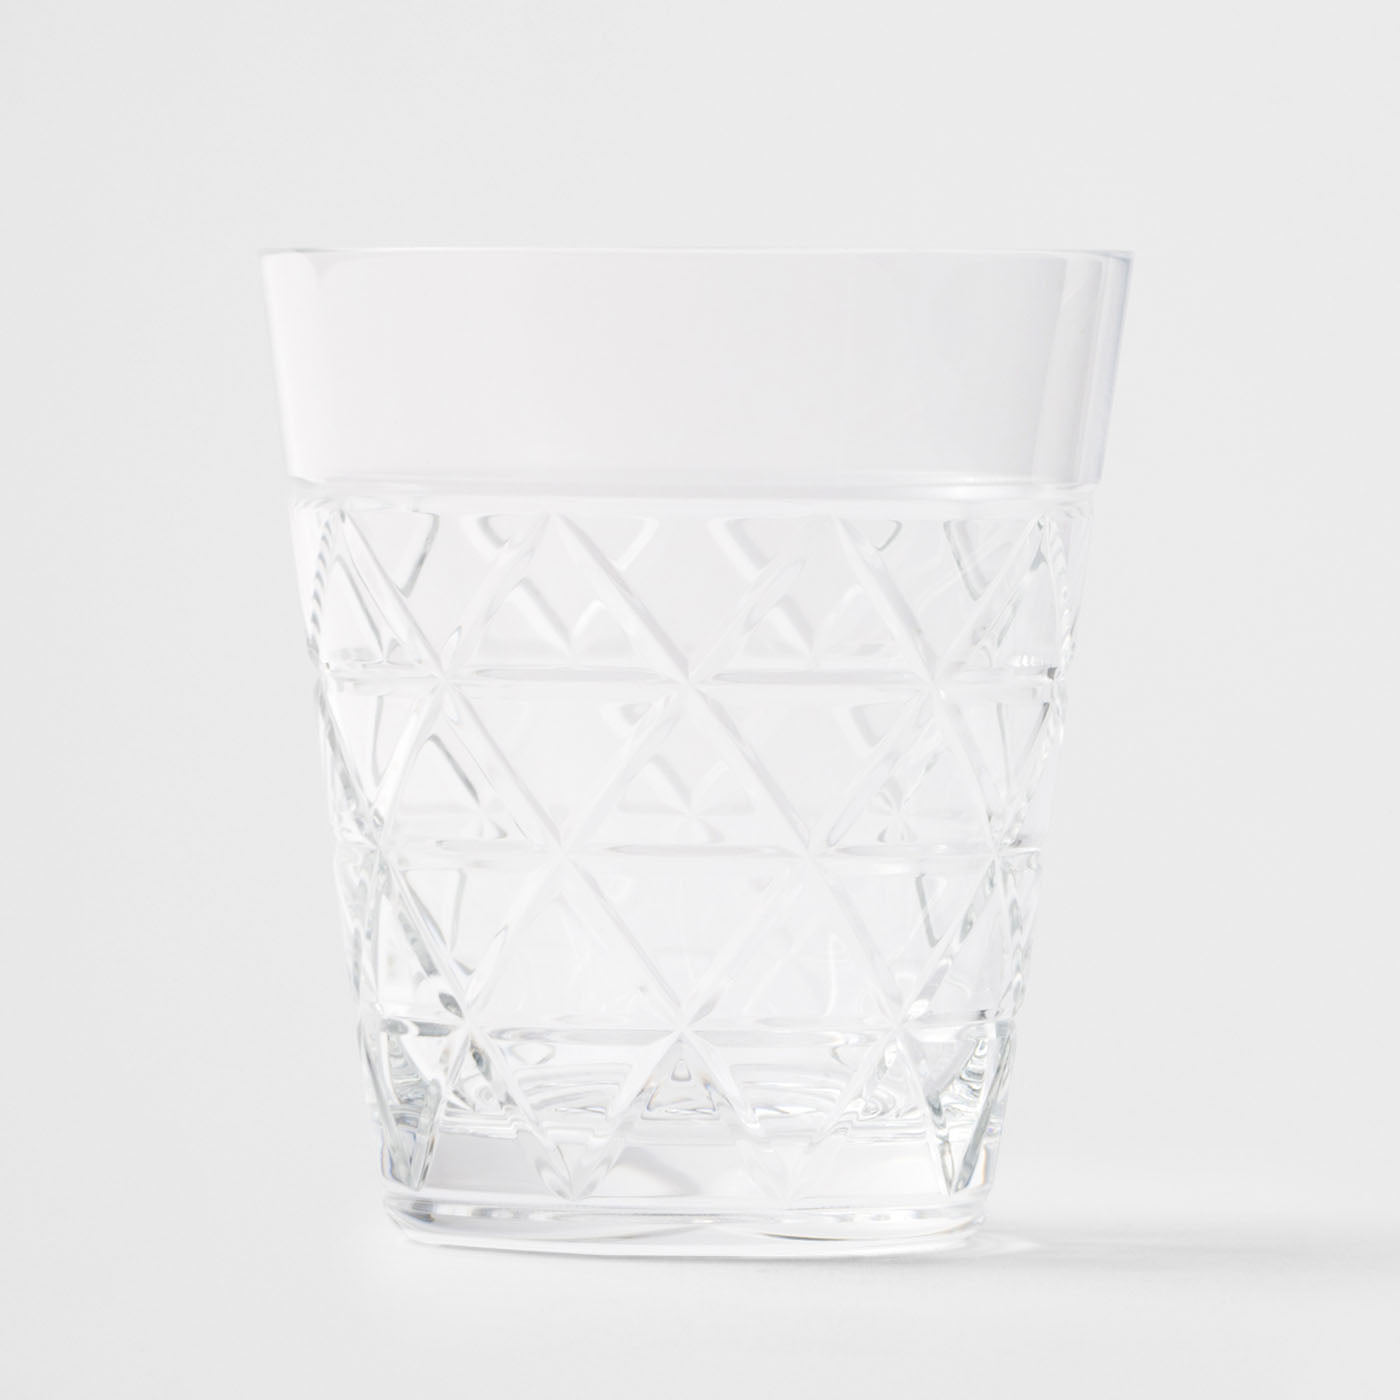 Traingles Kristallwasserglas - Alternative Ansicht 1